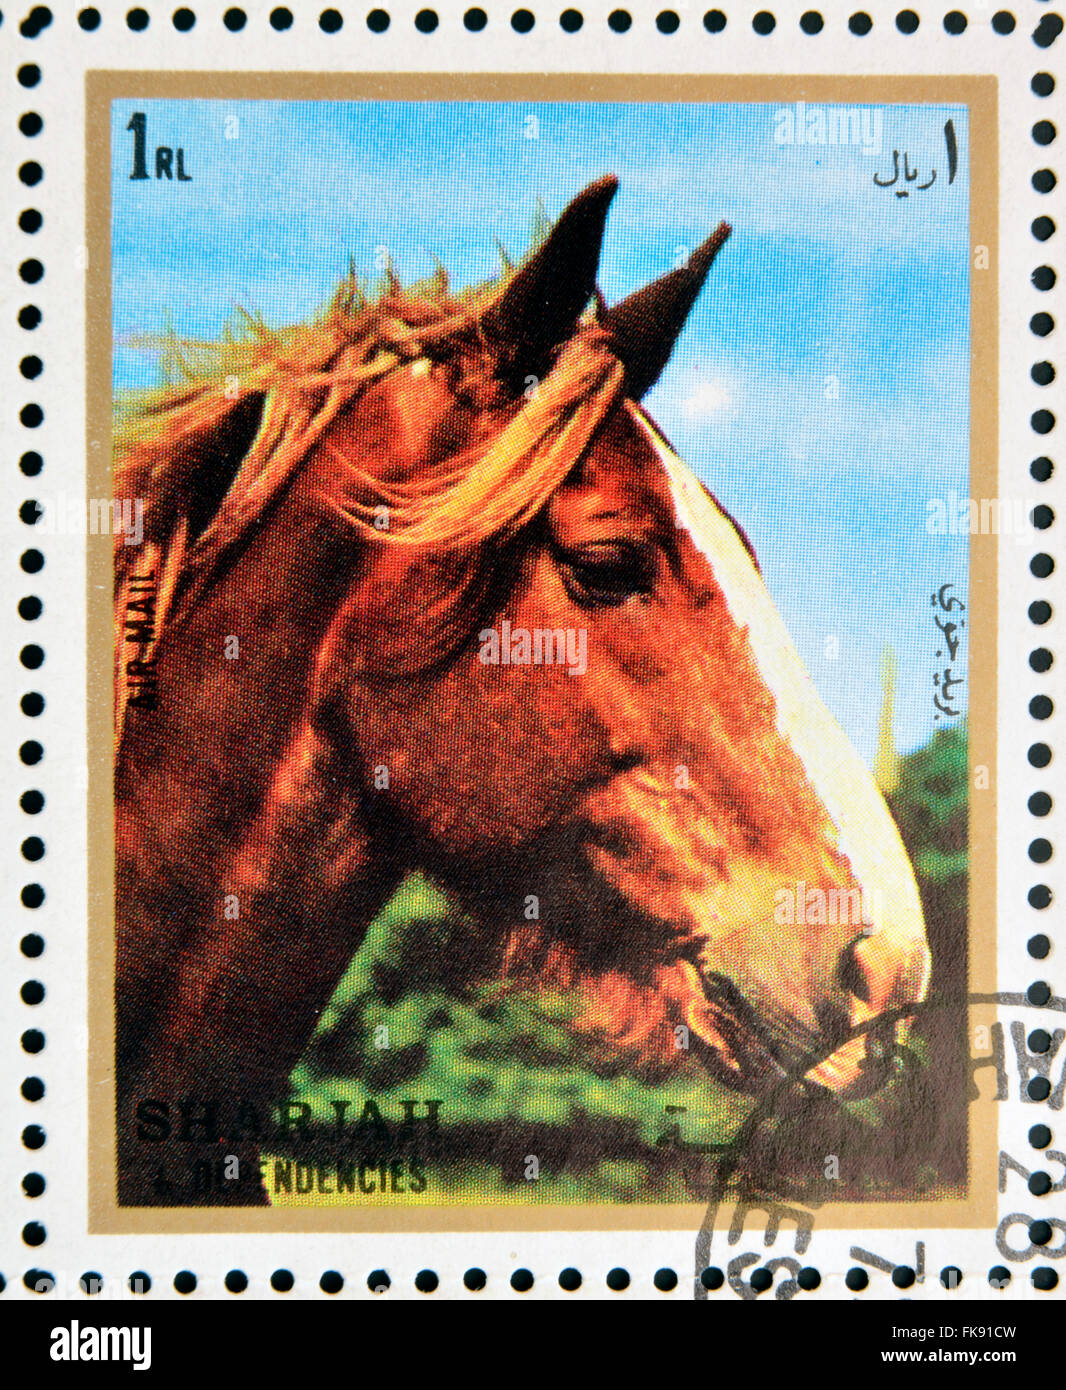 Emirato di Sharjah - circa 1972: francobolli stampati in Emirato di Sharjah mostra immagine del cavallo (Equus caballus ferus), circa 197 Foto Stock